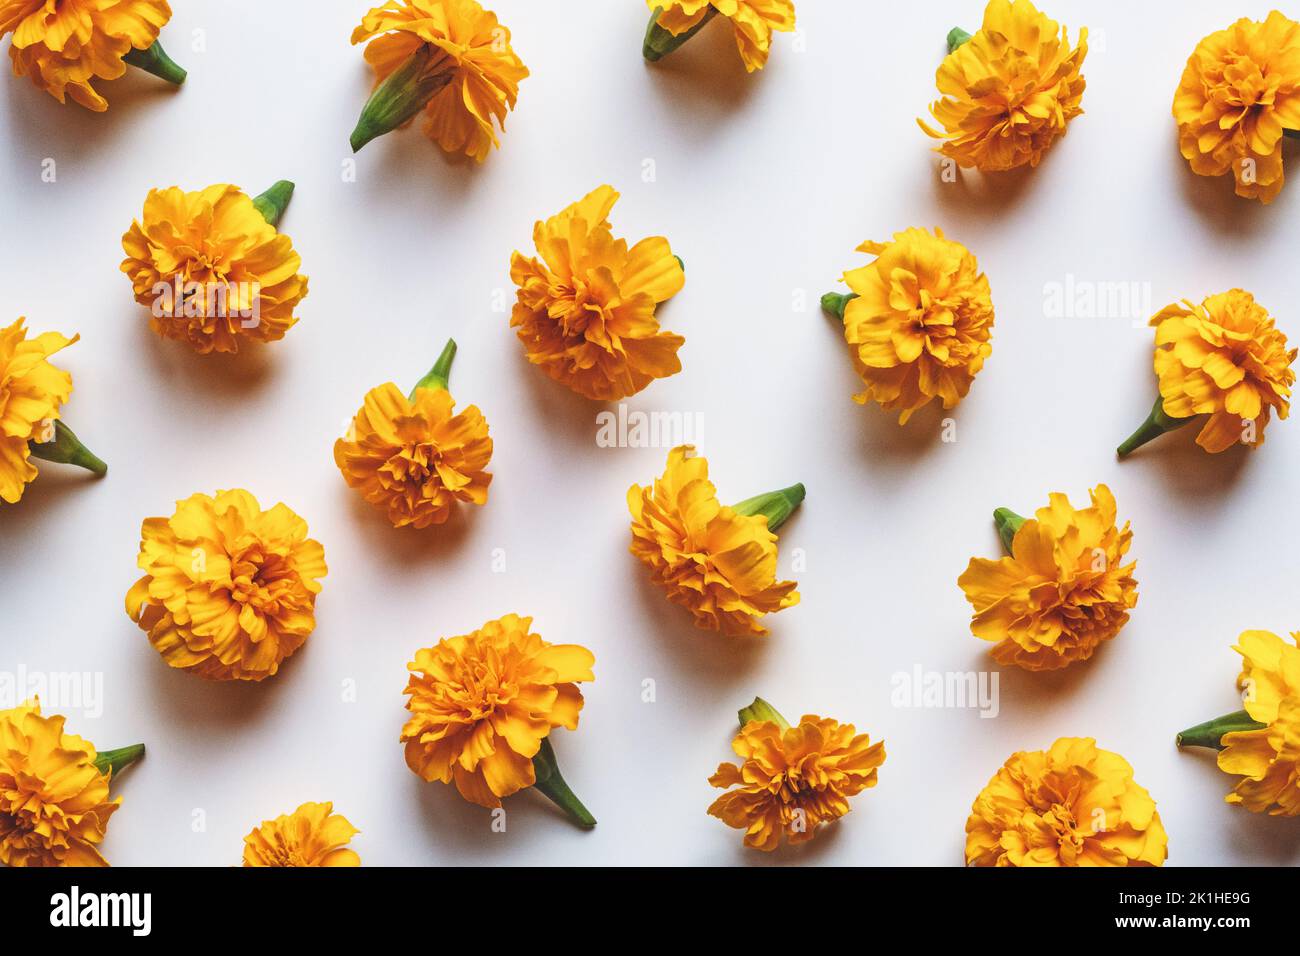 Marigold flowers pattern on white background, holiday decoration, orange marigolds flat lay Stock Photo